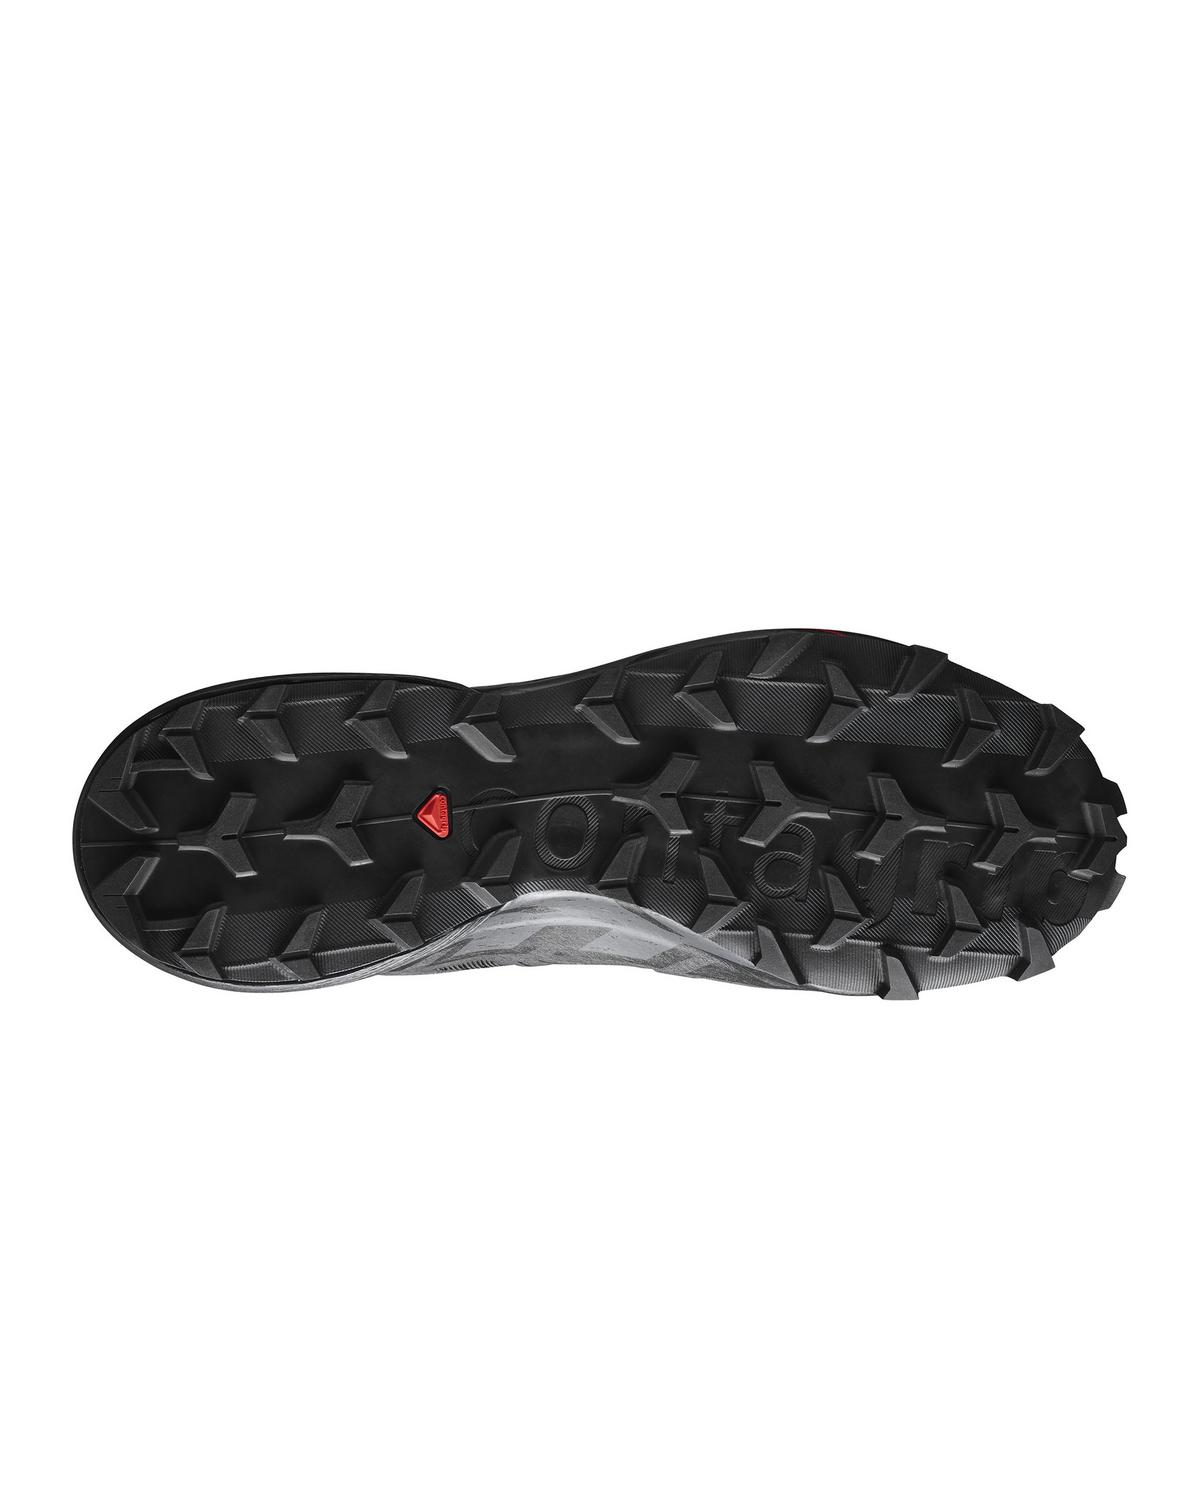 Salomon Men's Speedcross 6 Trail Running Shoes -  Black